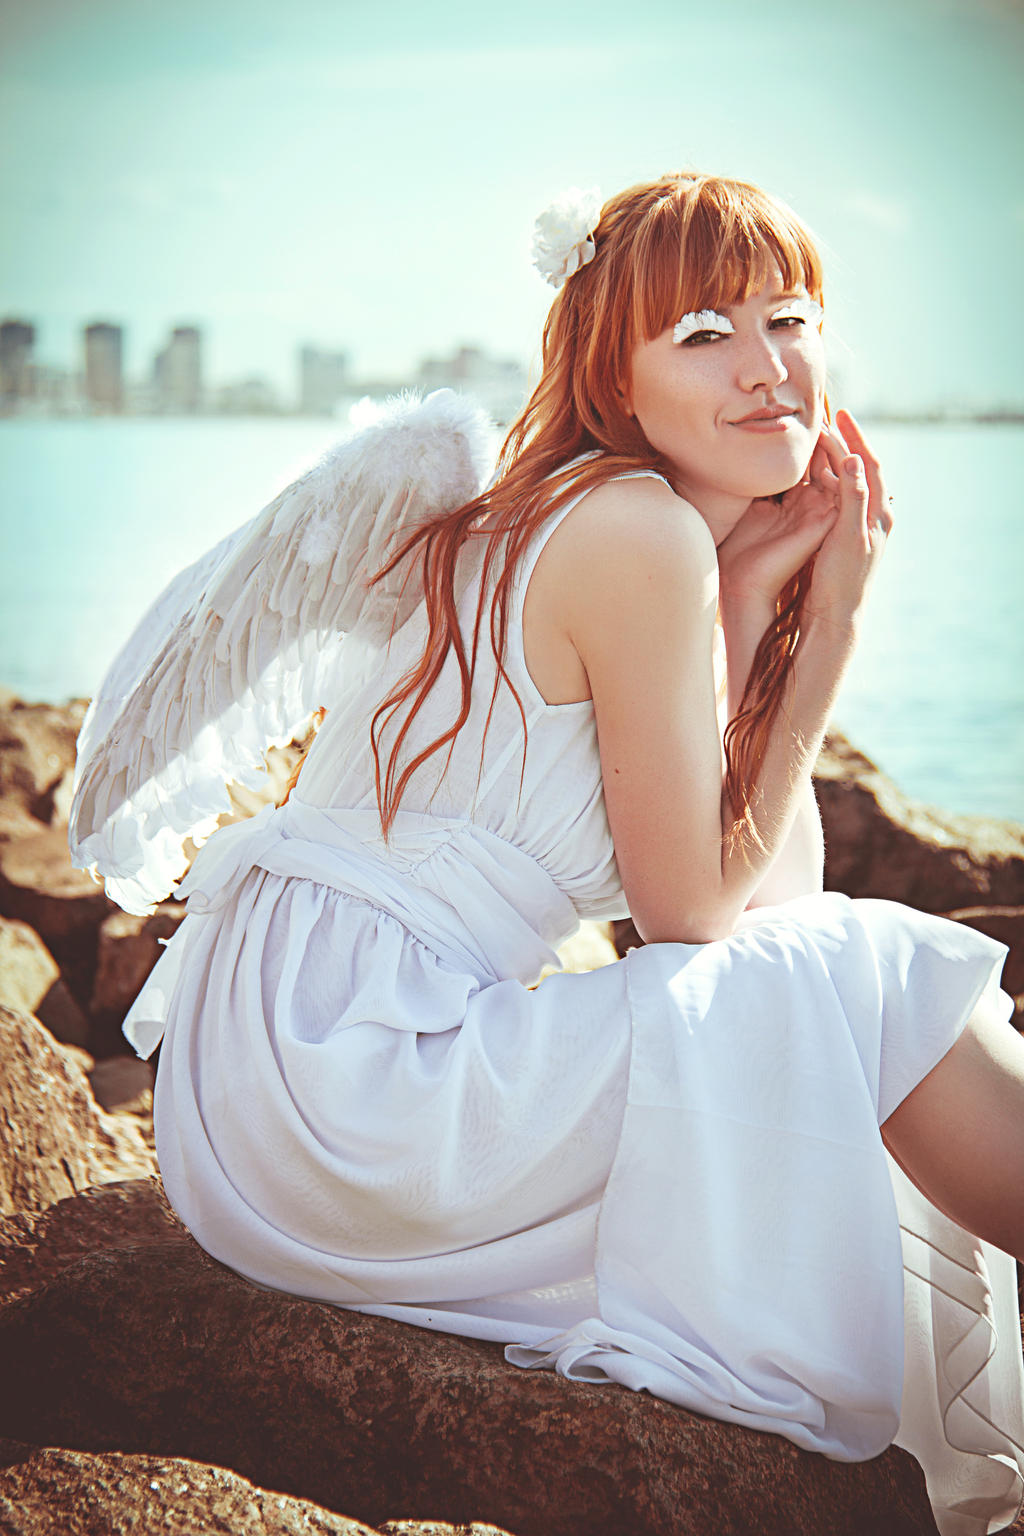 I'm angel